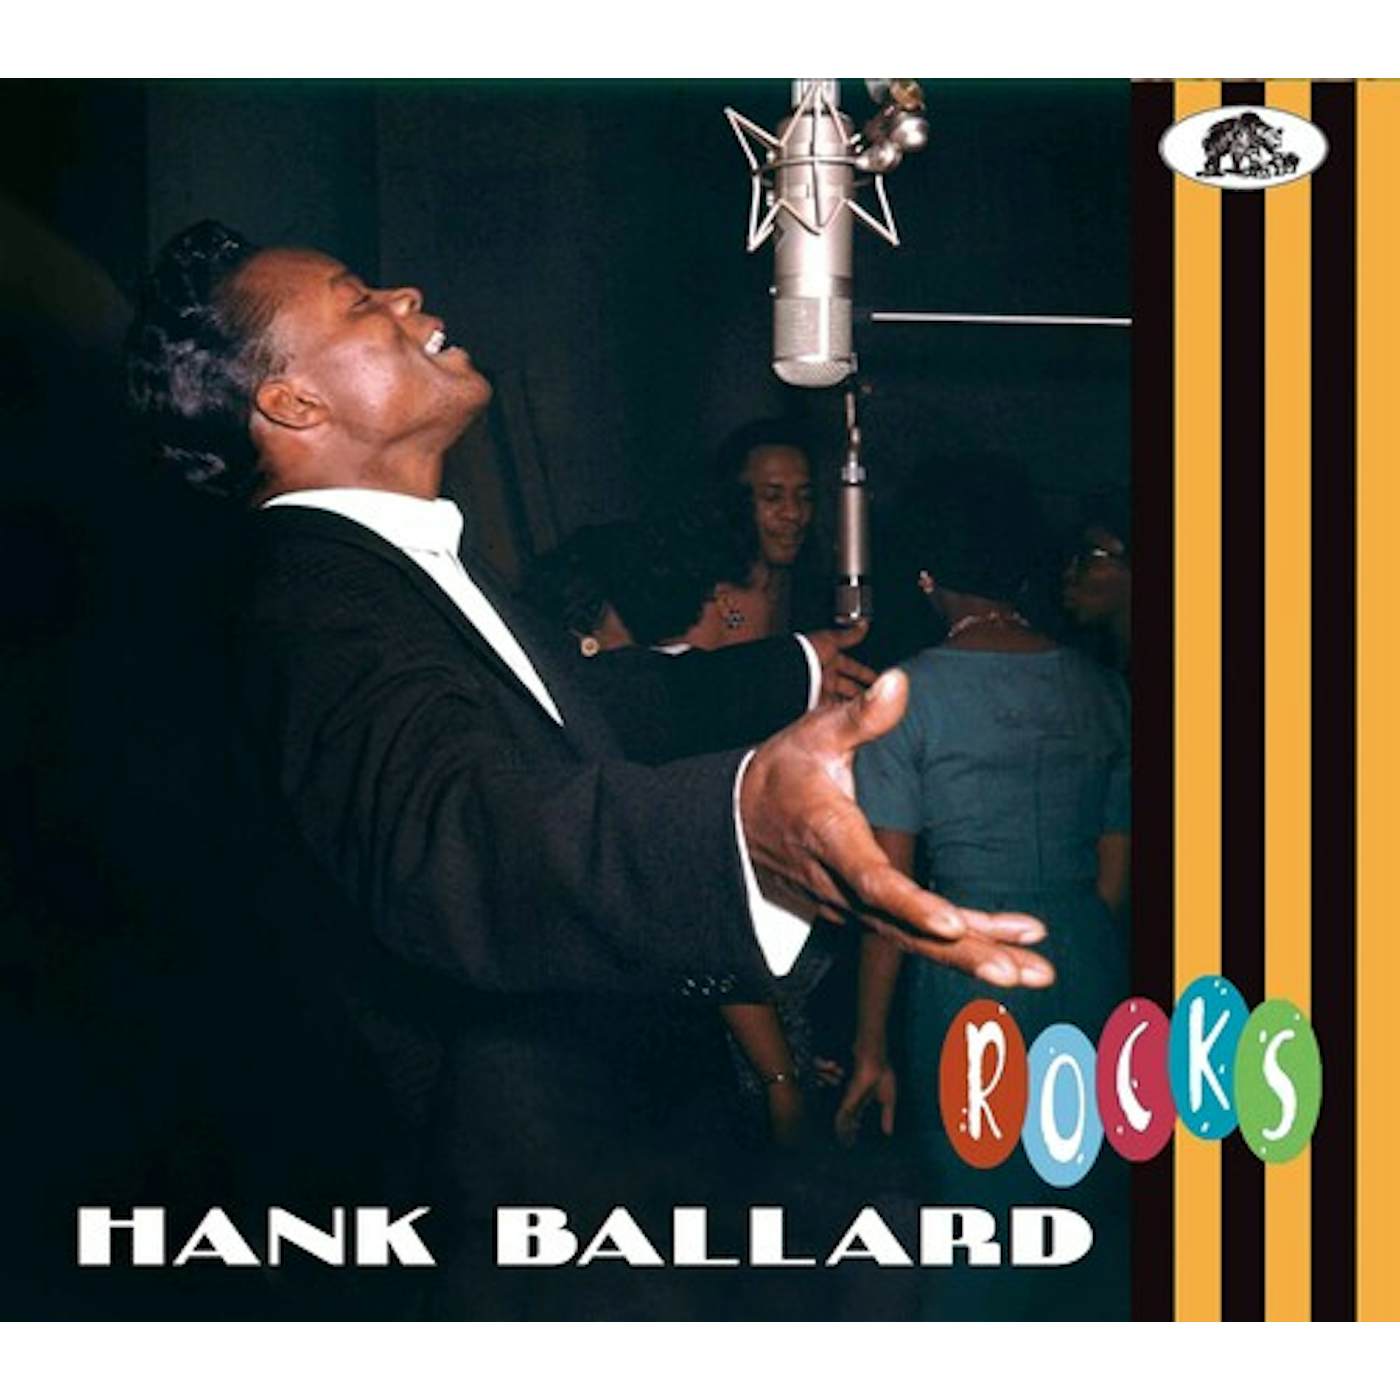 Hank Ballard ROCKS CD